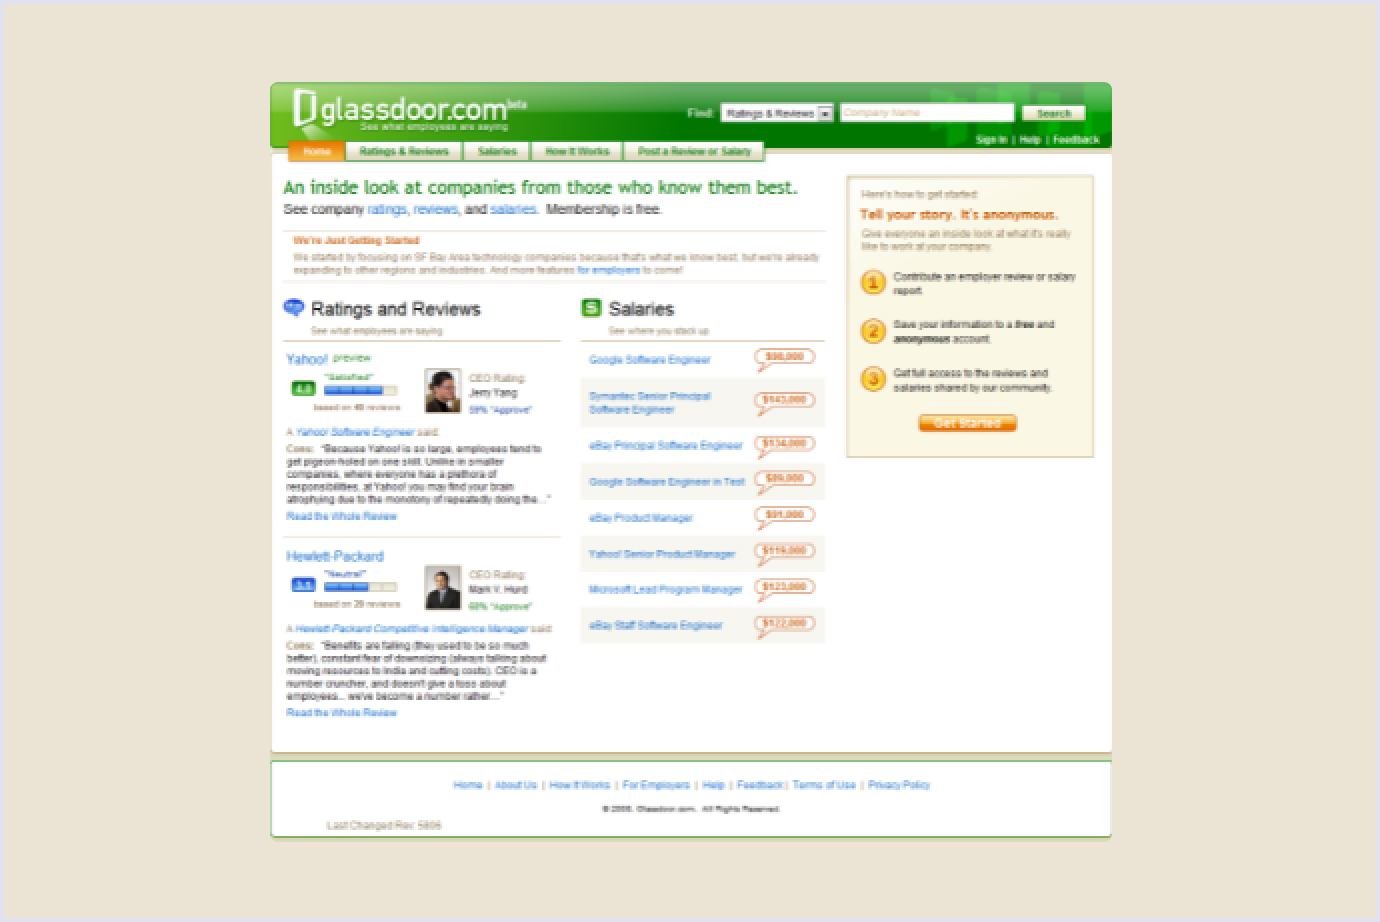 Glassdoor job board website 2008